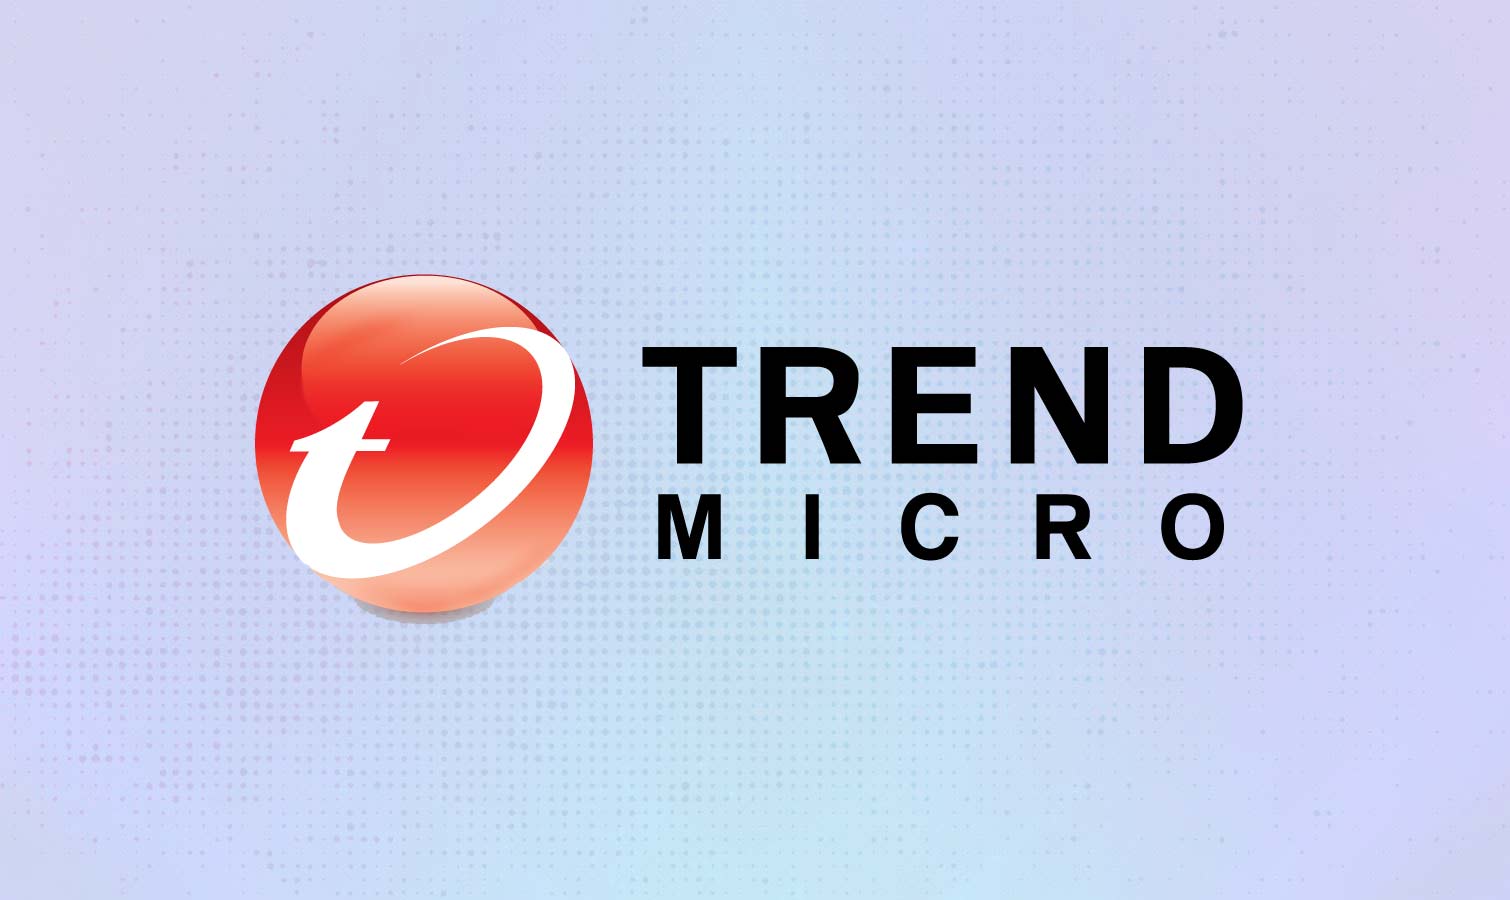 trend micro download scanner alert